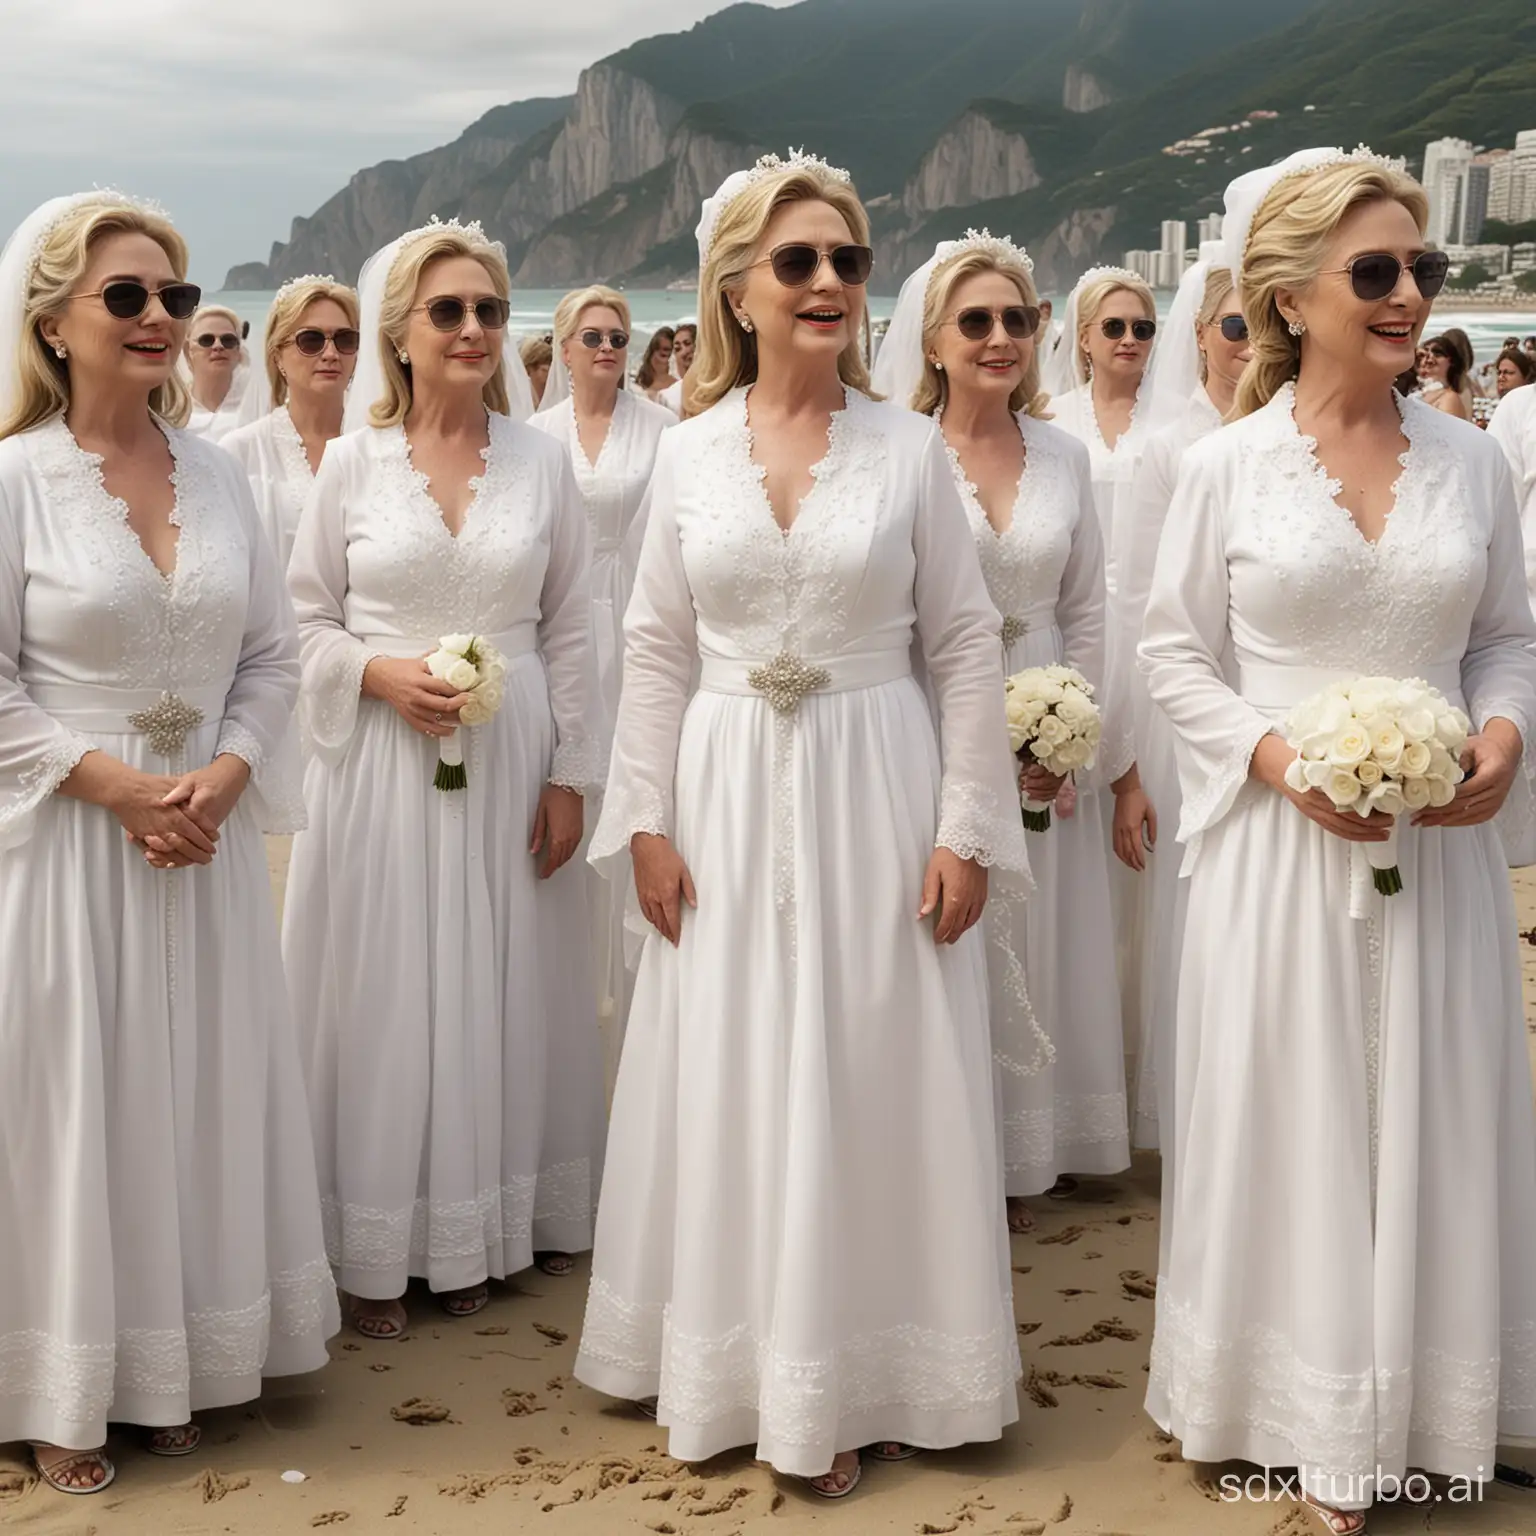 Multidão de Hillary Clinton e suas clones vestidas de noivas discutindo juntas na praia de Copacabana e pessoas olhando